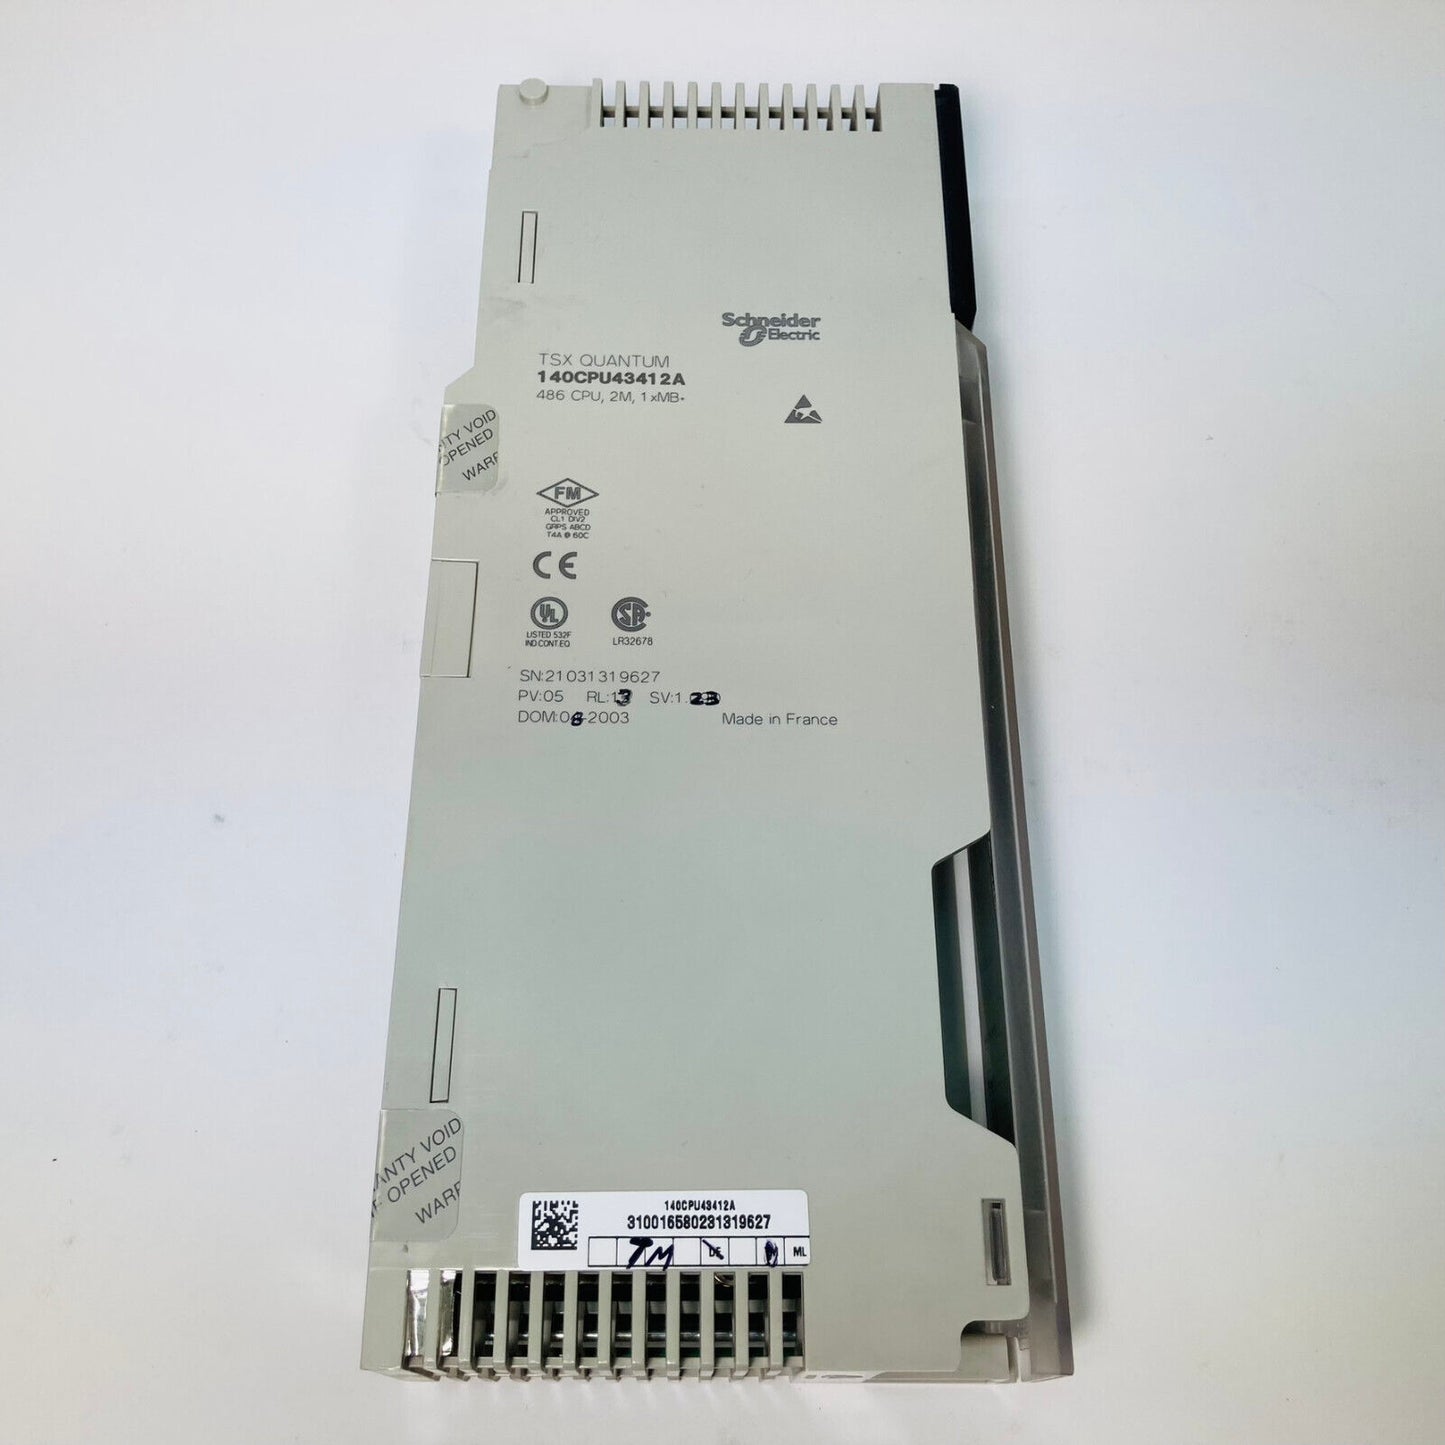 Schneider Electric 140CPU43412A CPU TSX Quantum